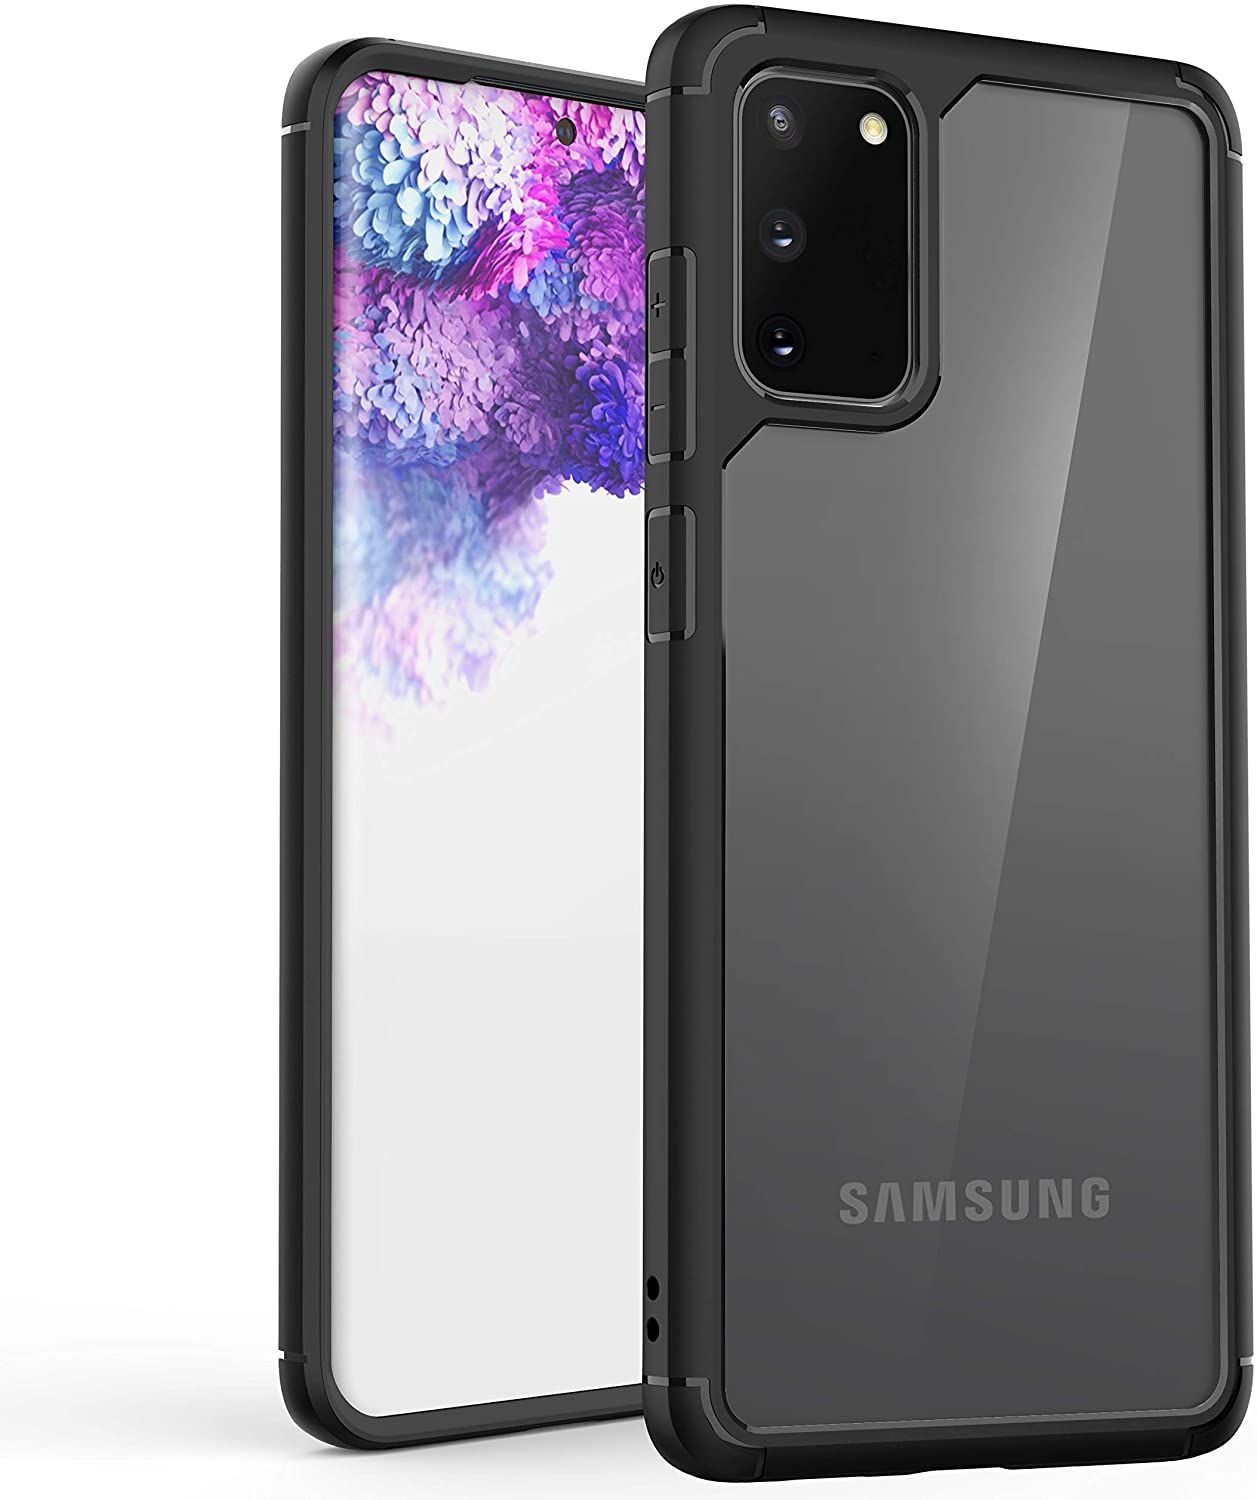 Samsung Galaxy S10 Case, Hybrid Clear Transparent TPU Bumper Frame Cover Case